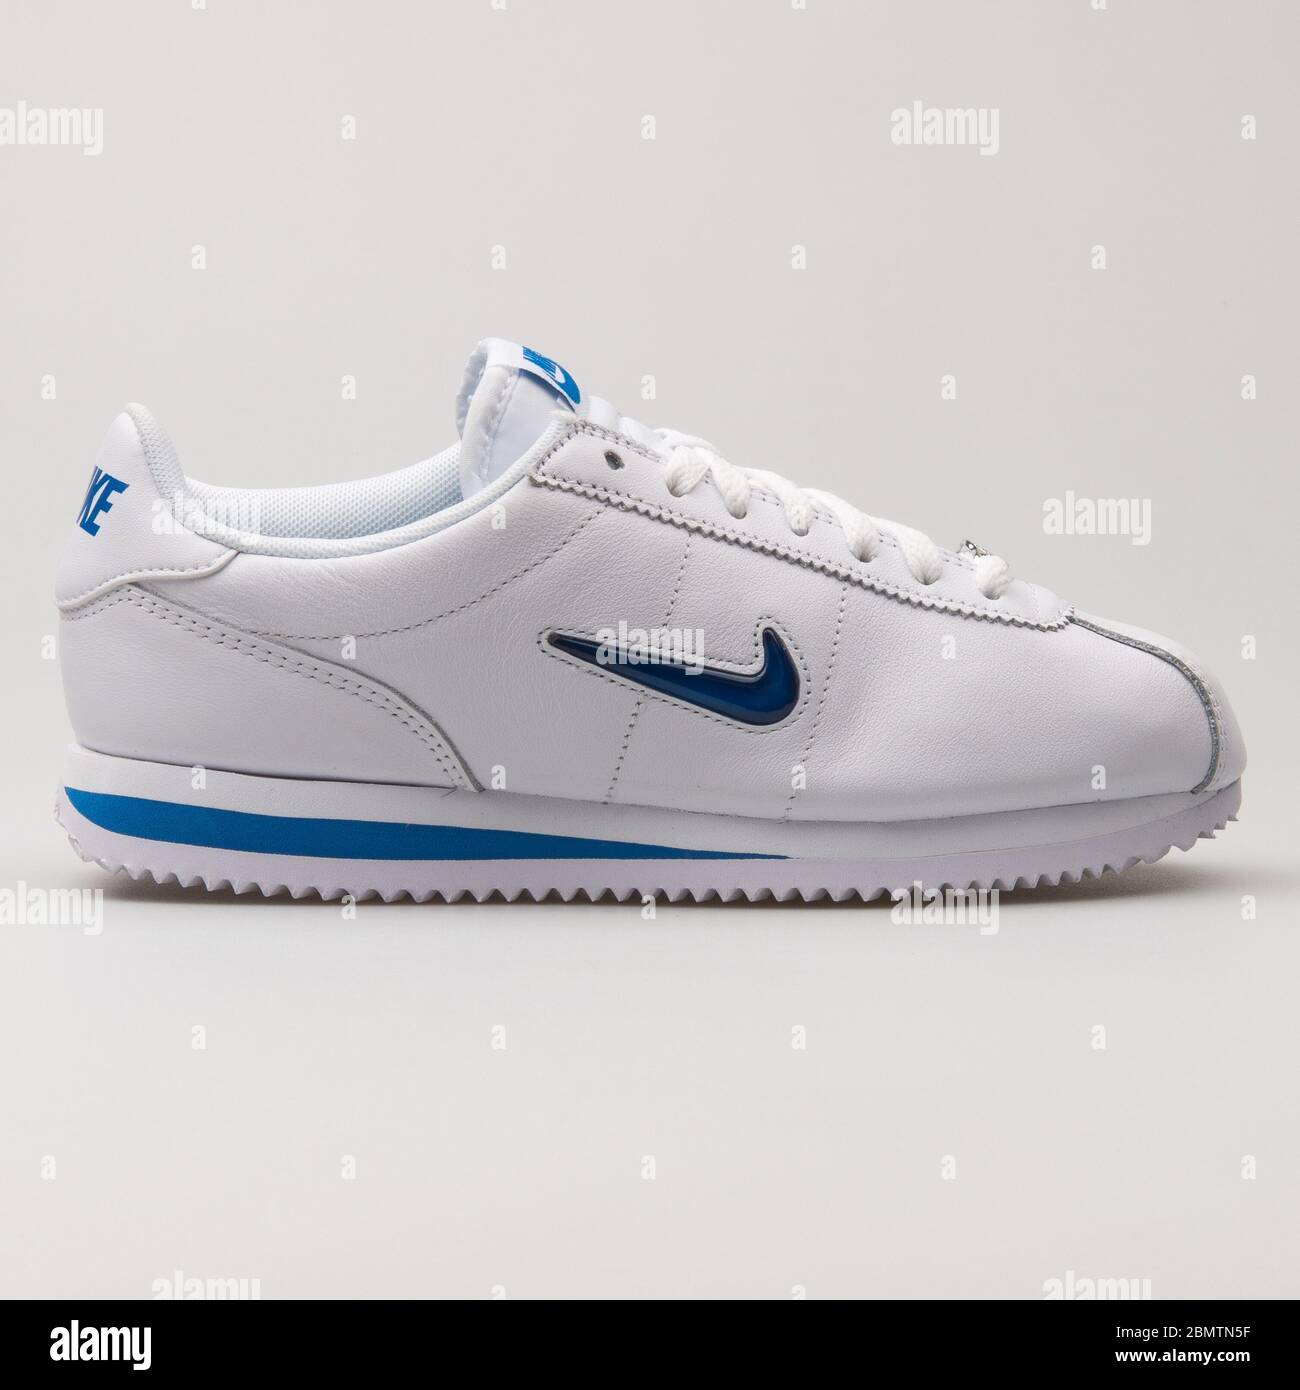 VIENNE, AUTRICHE - 19 FÉVRIER 2018 : sneaker Nike Cortez Basic Jewel 18  bleu et blanc sur fond blanc Photo Stock - Alamy